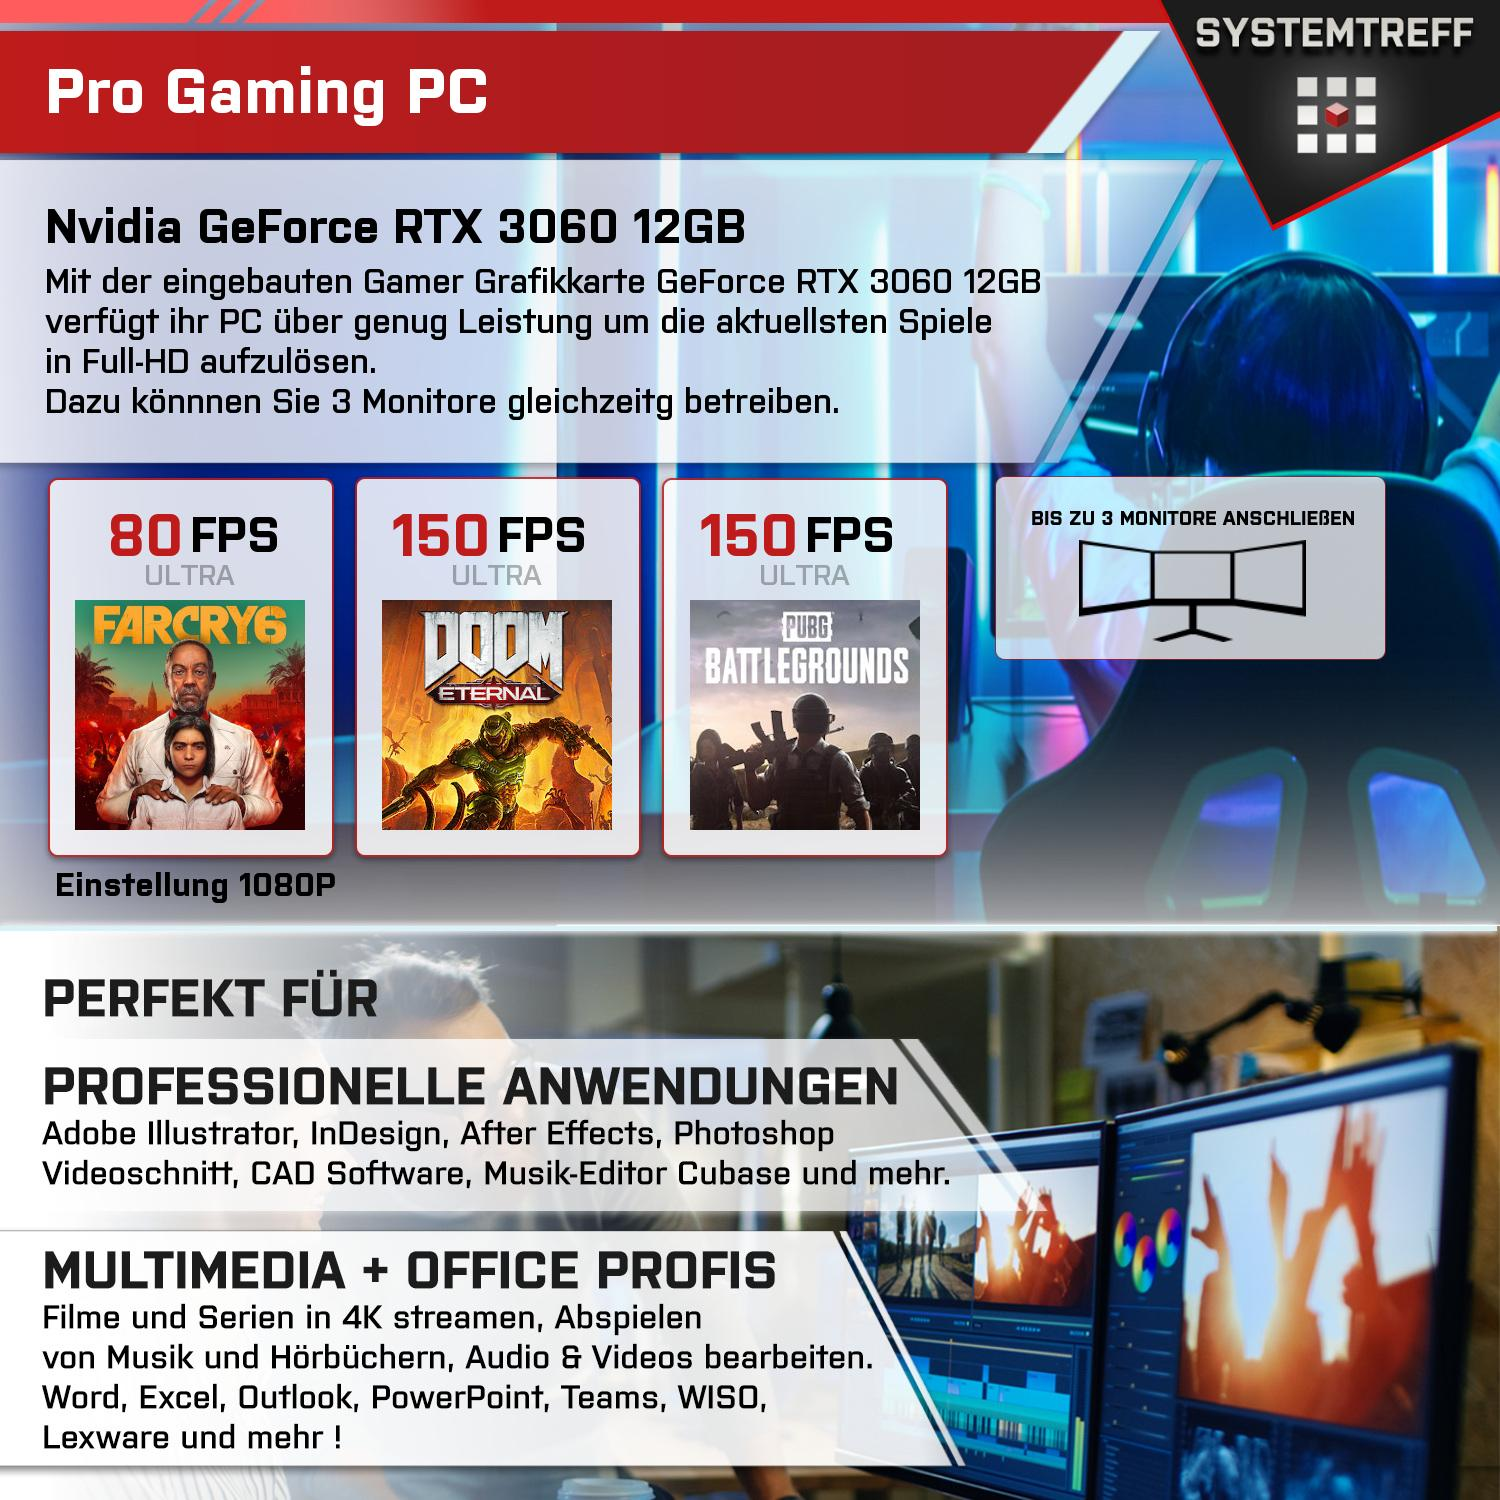 SYSTEMTREFF Gaming Komplett AMD Ryzen mSSD, GDDR6, 5900X GB 12GB GB GB PC RTX 32 GeForce mit 5900X, RAM, Prozessor, 1000 12 9 3060 Komplett Nvidia